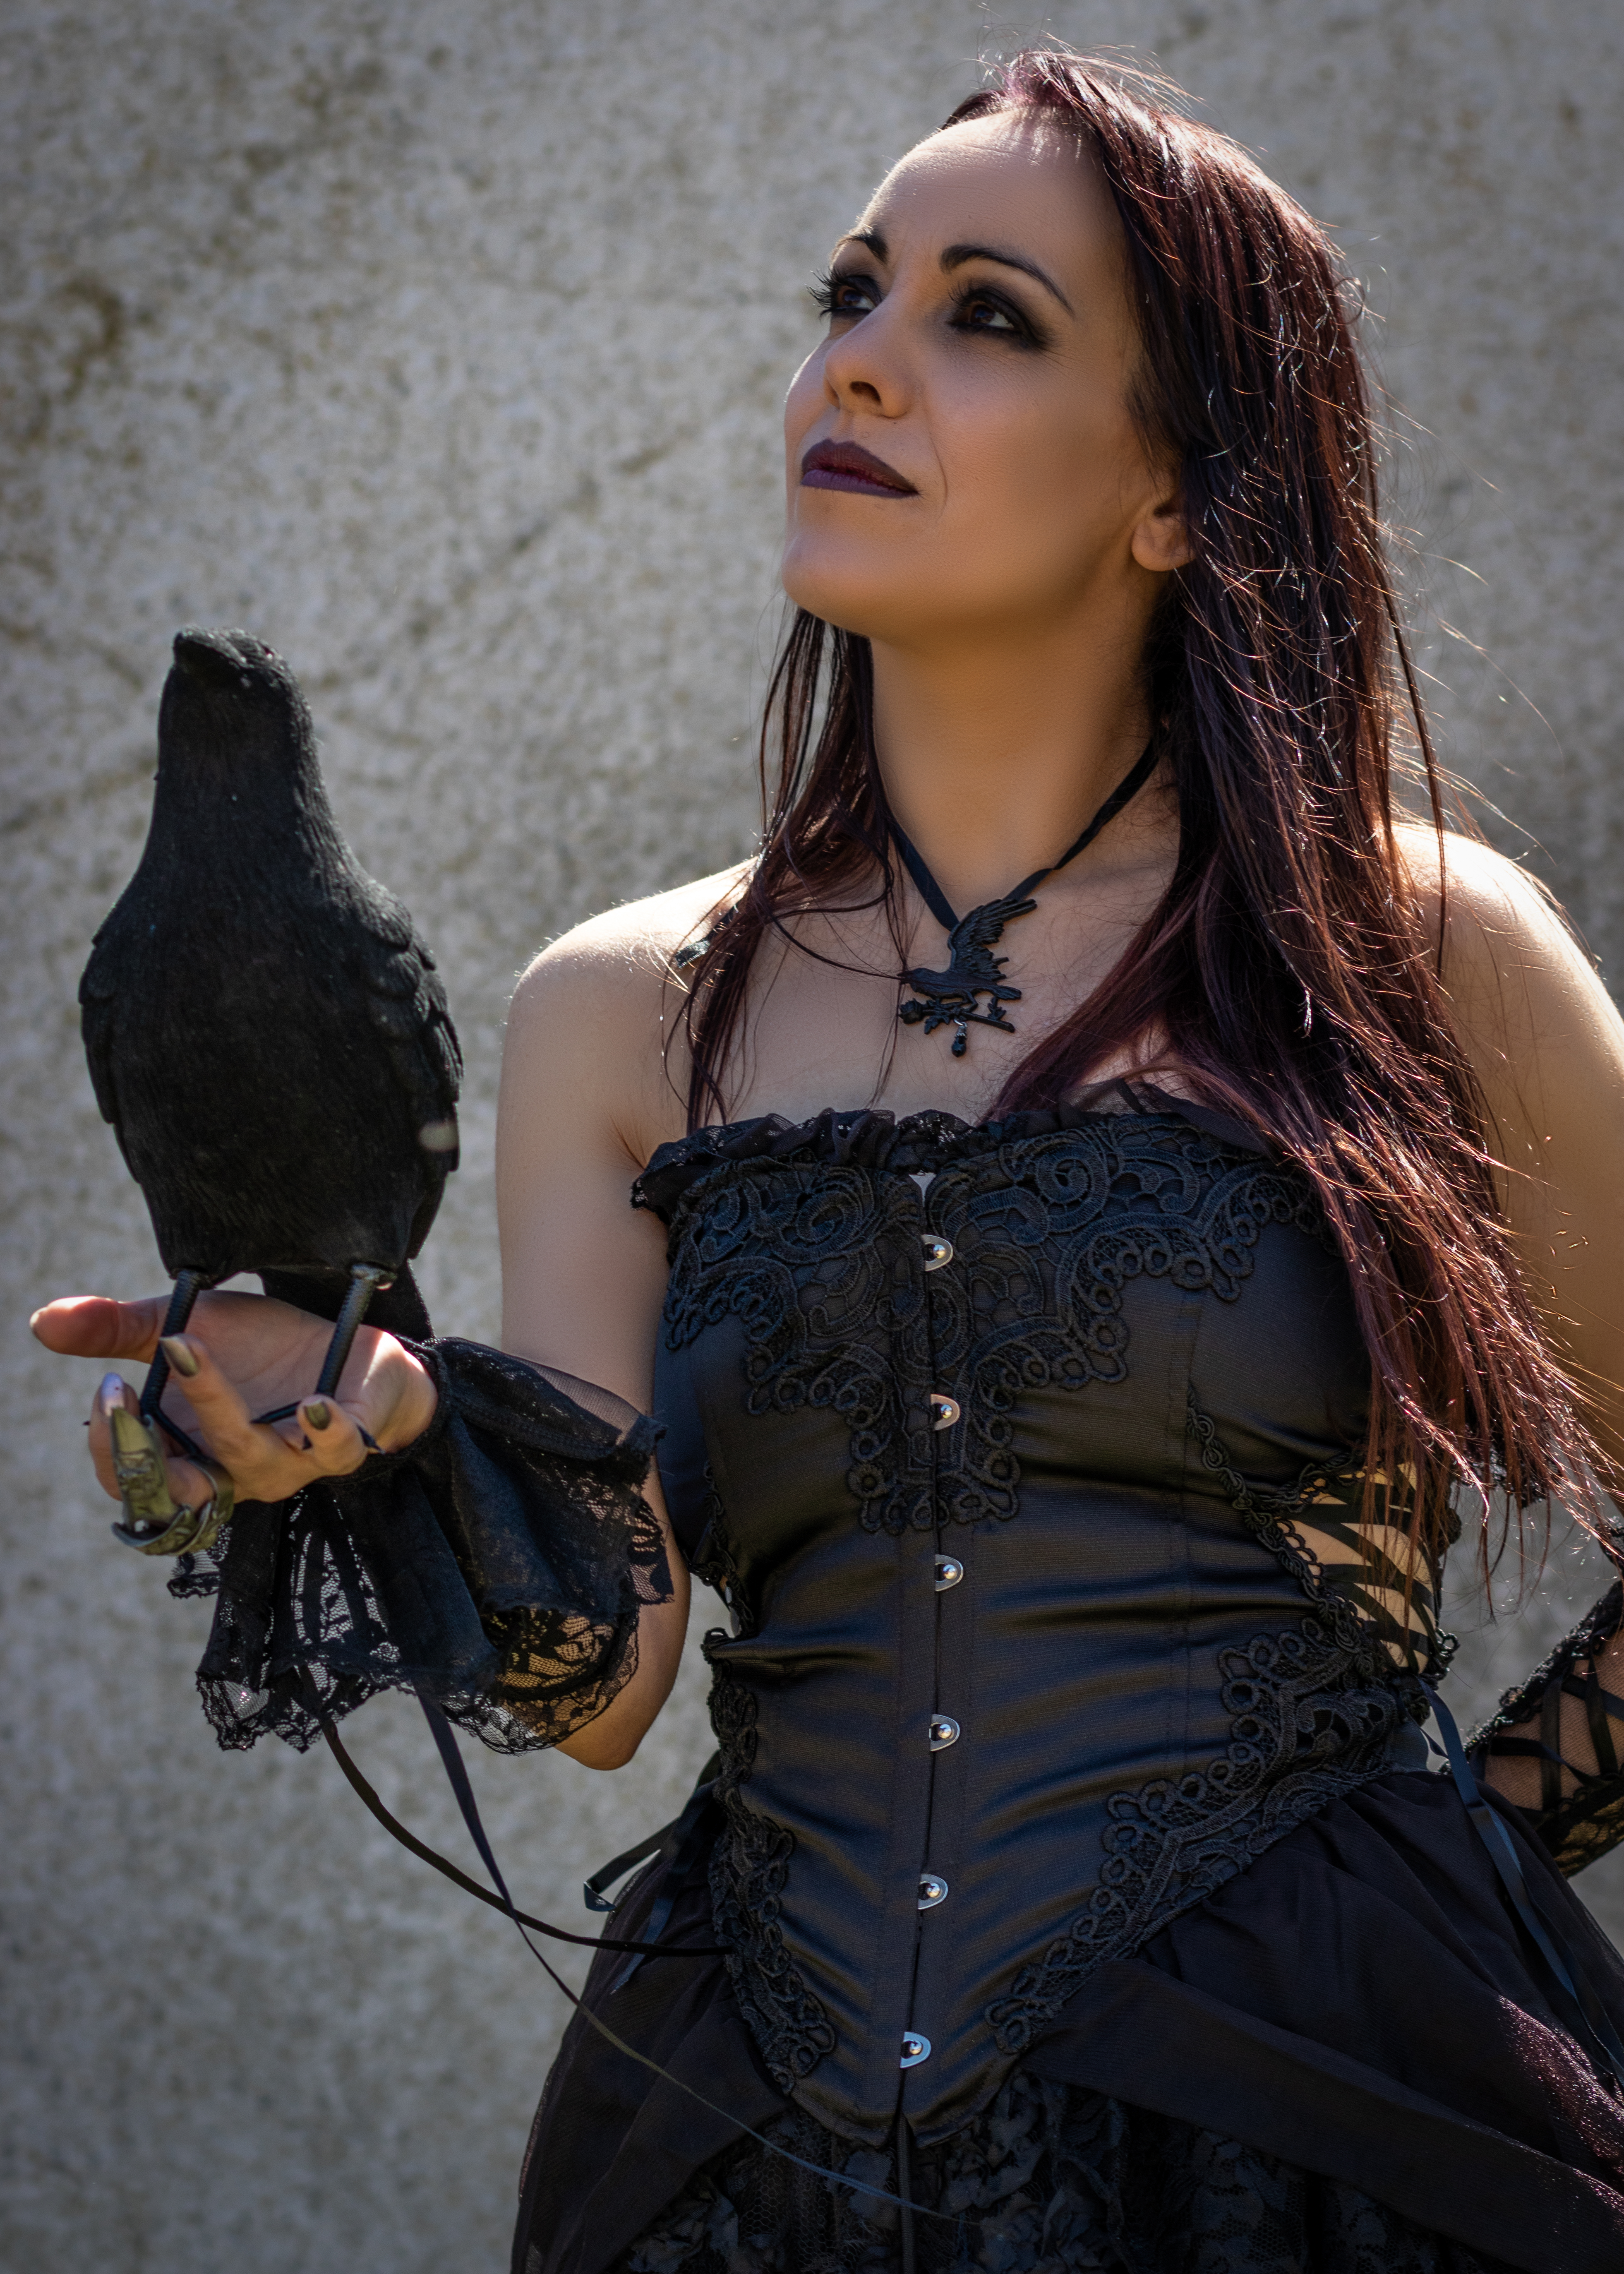 Raven Blackwing